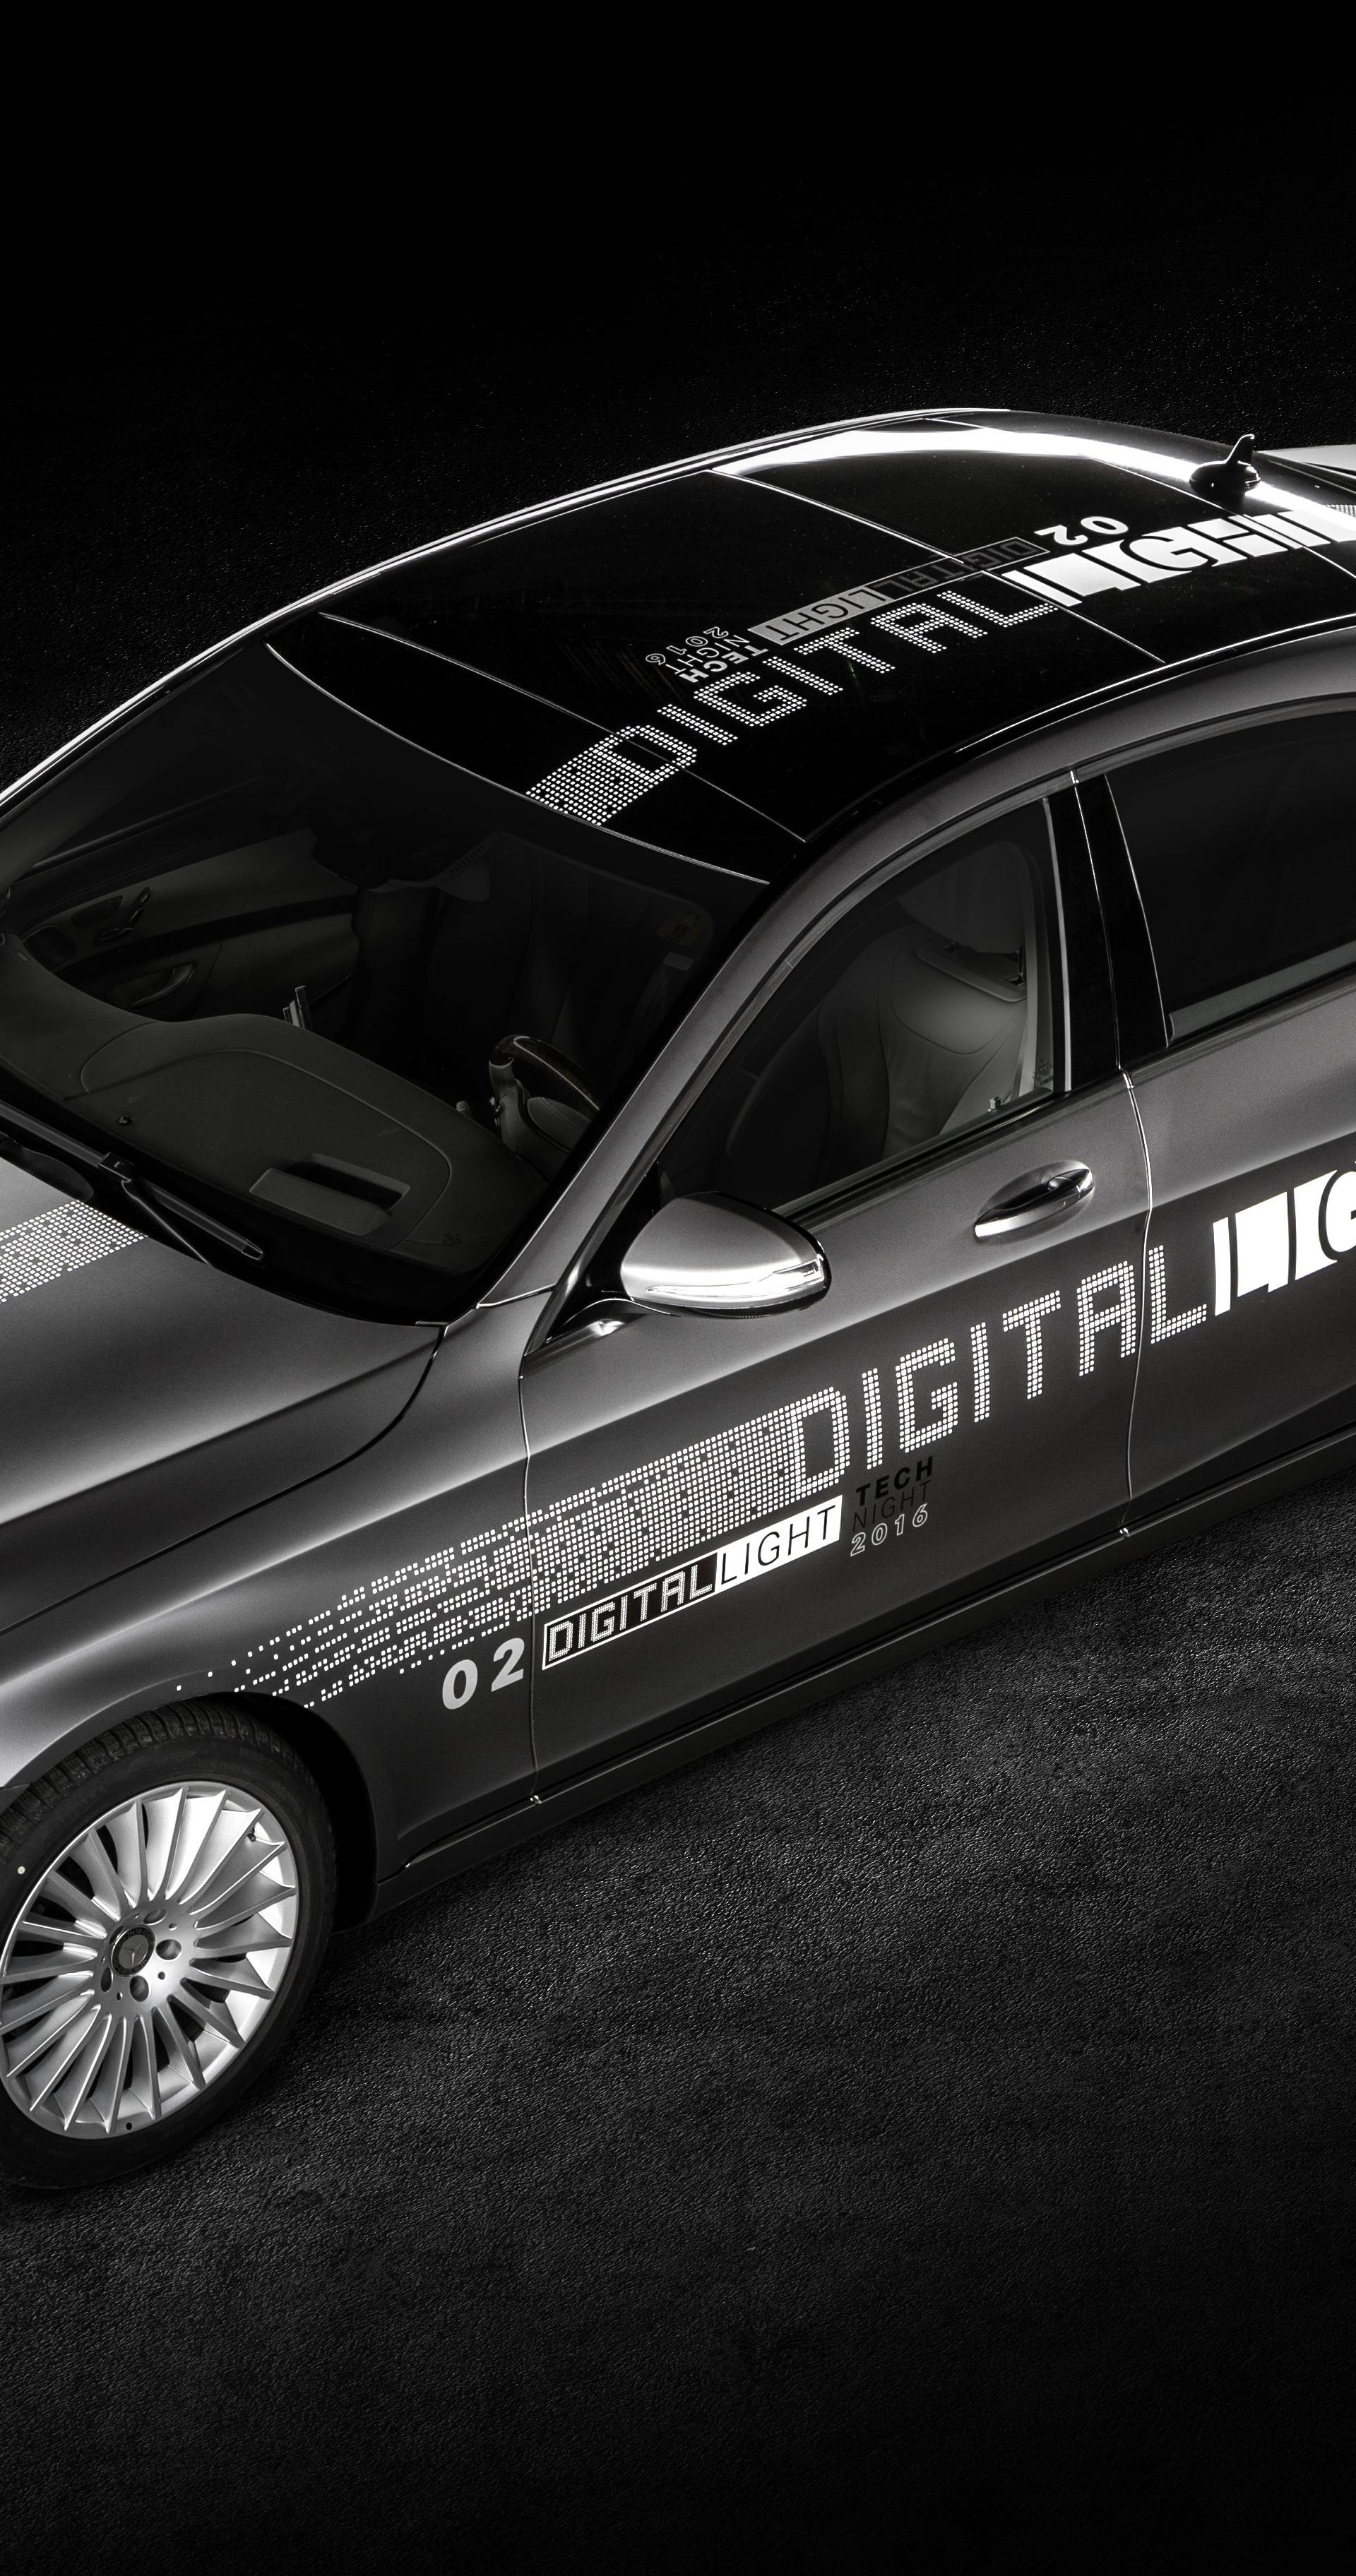 Revolution der Scheinwerfertechnologie: Mercedes leuchtet in HD-QualitÃ¤t